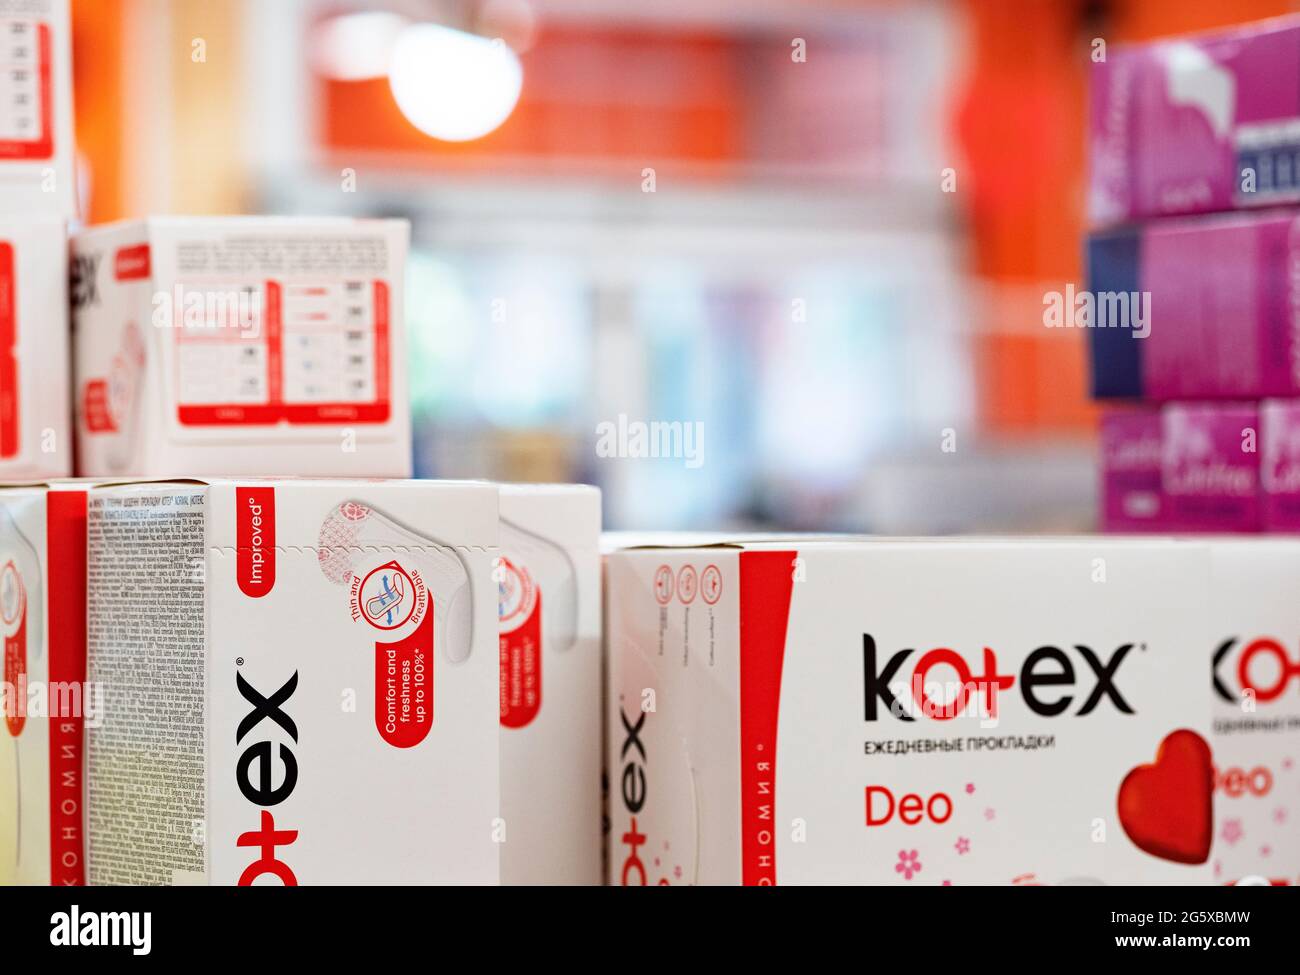 Serviette hygiénique kotex Banque de photographies et d'images à haute  résolution - Alamy